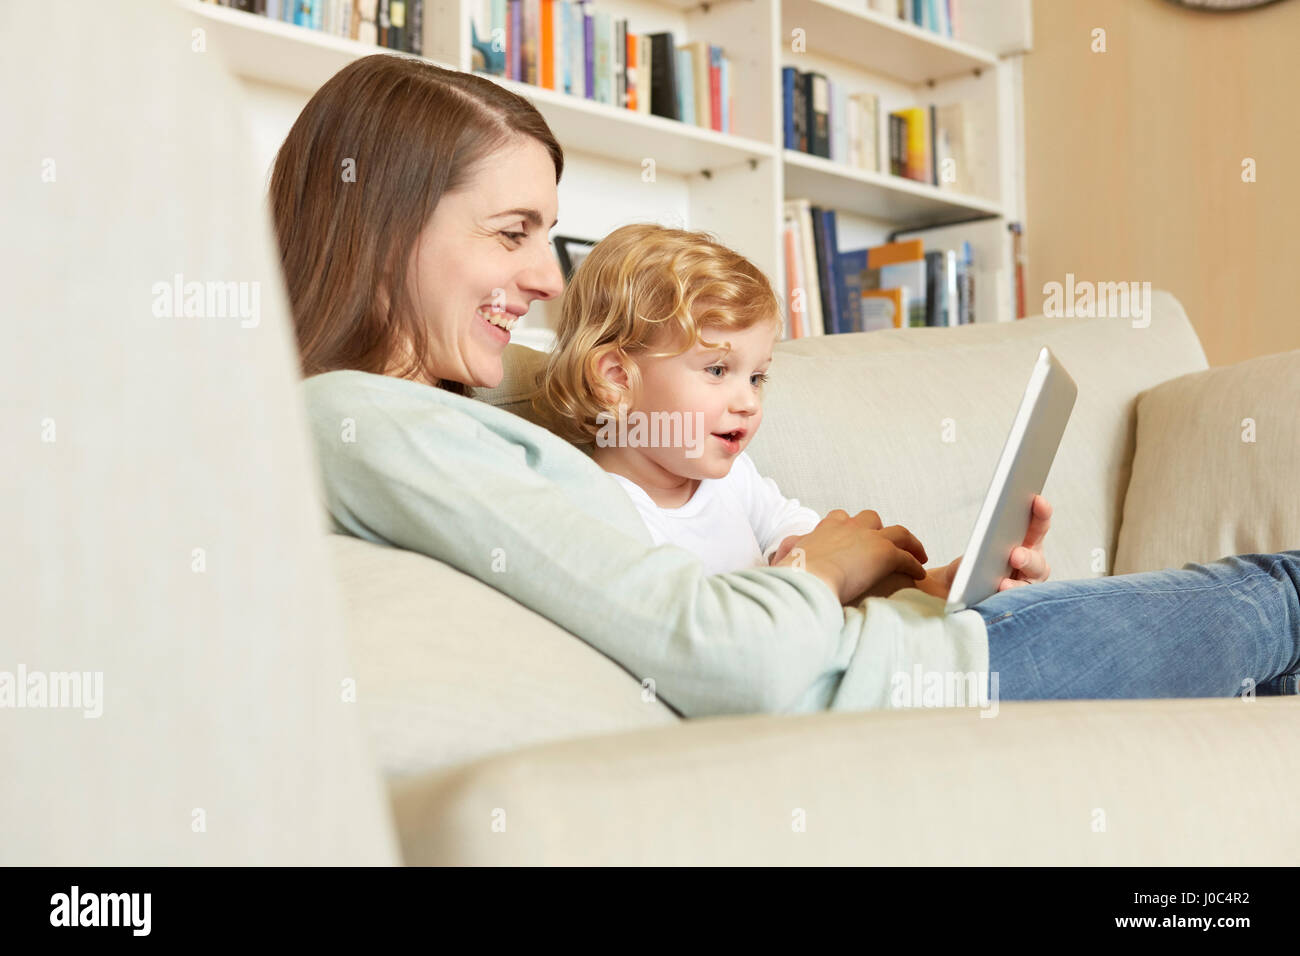 Femmina bambino seduto sul divano con la madre guardando a tavoletta digitale Foto Stock